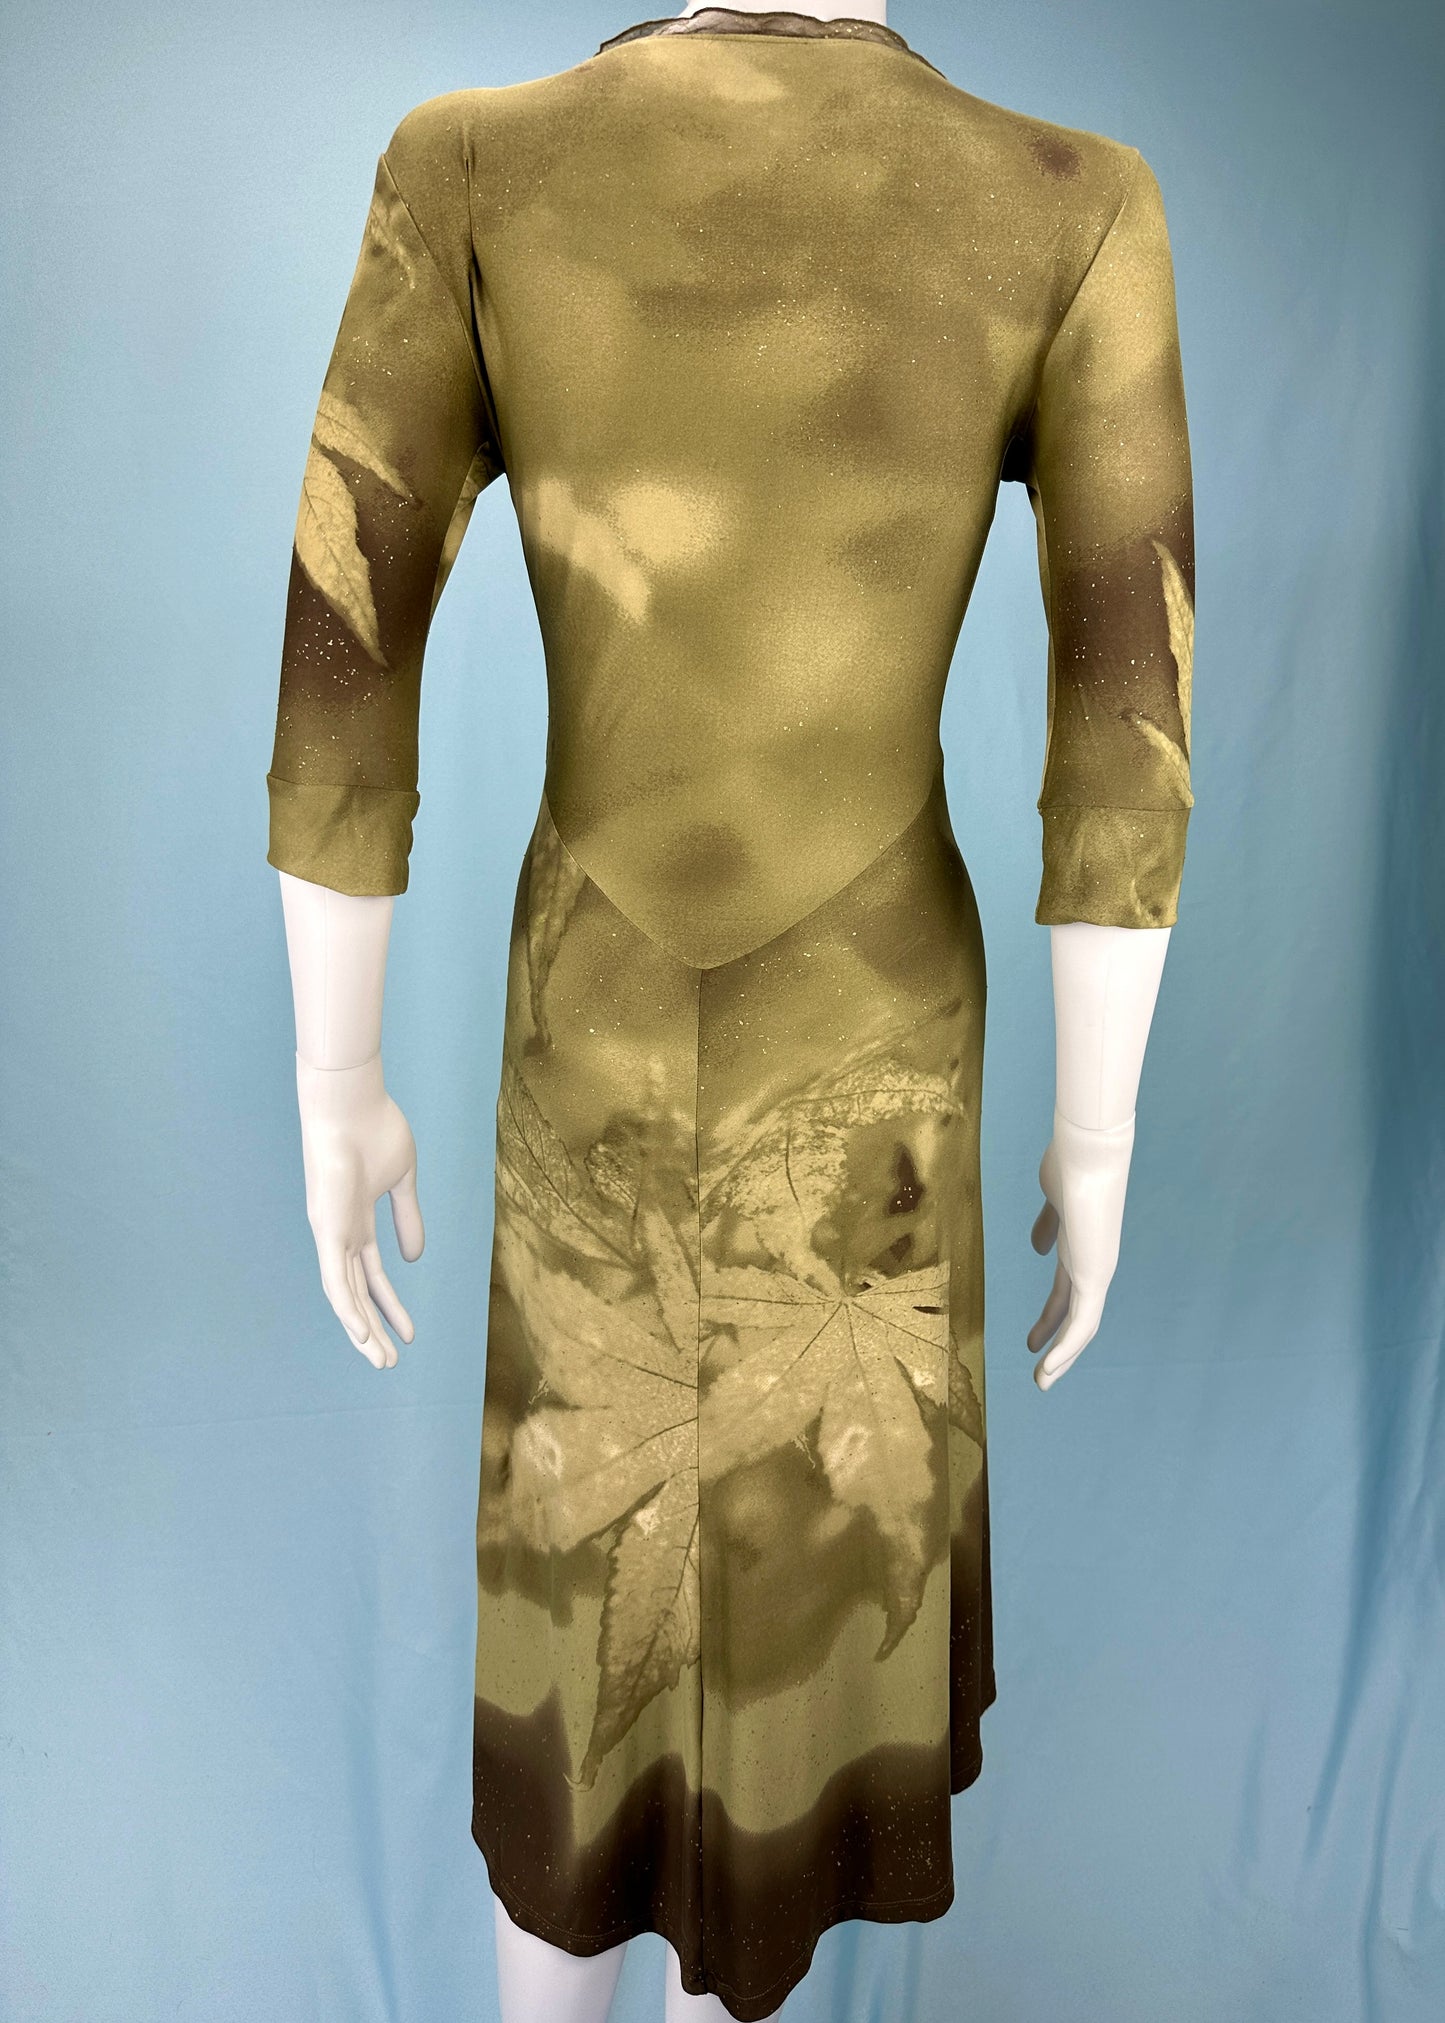 Roberto Cavalli Fall 1999 Leaf Print Dress